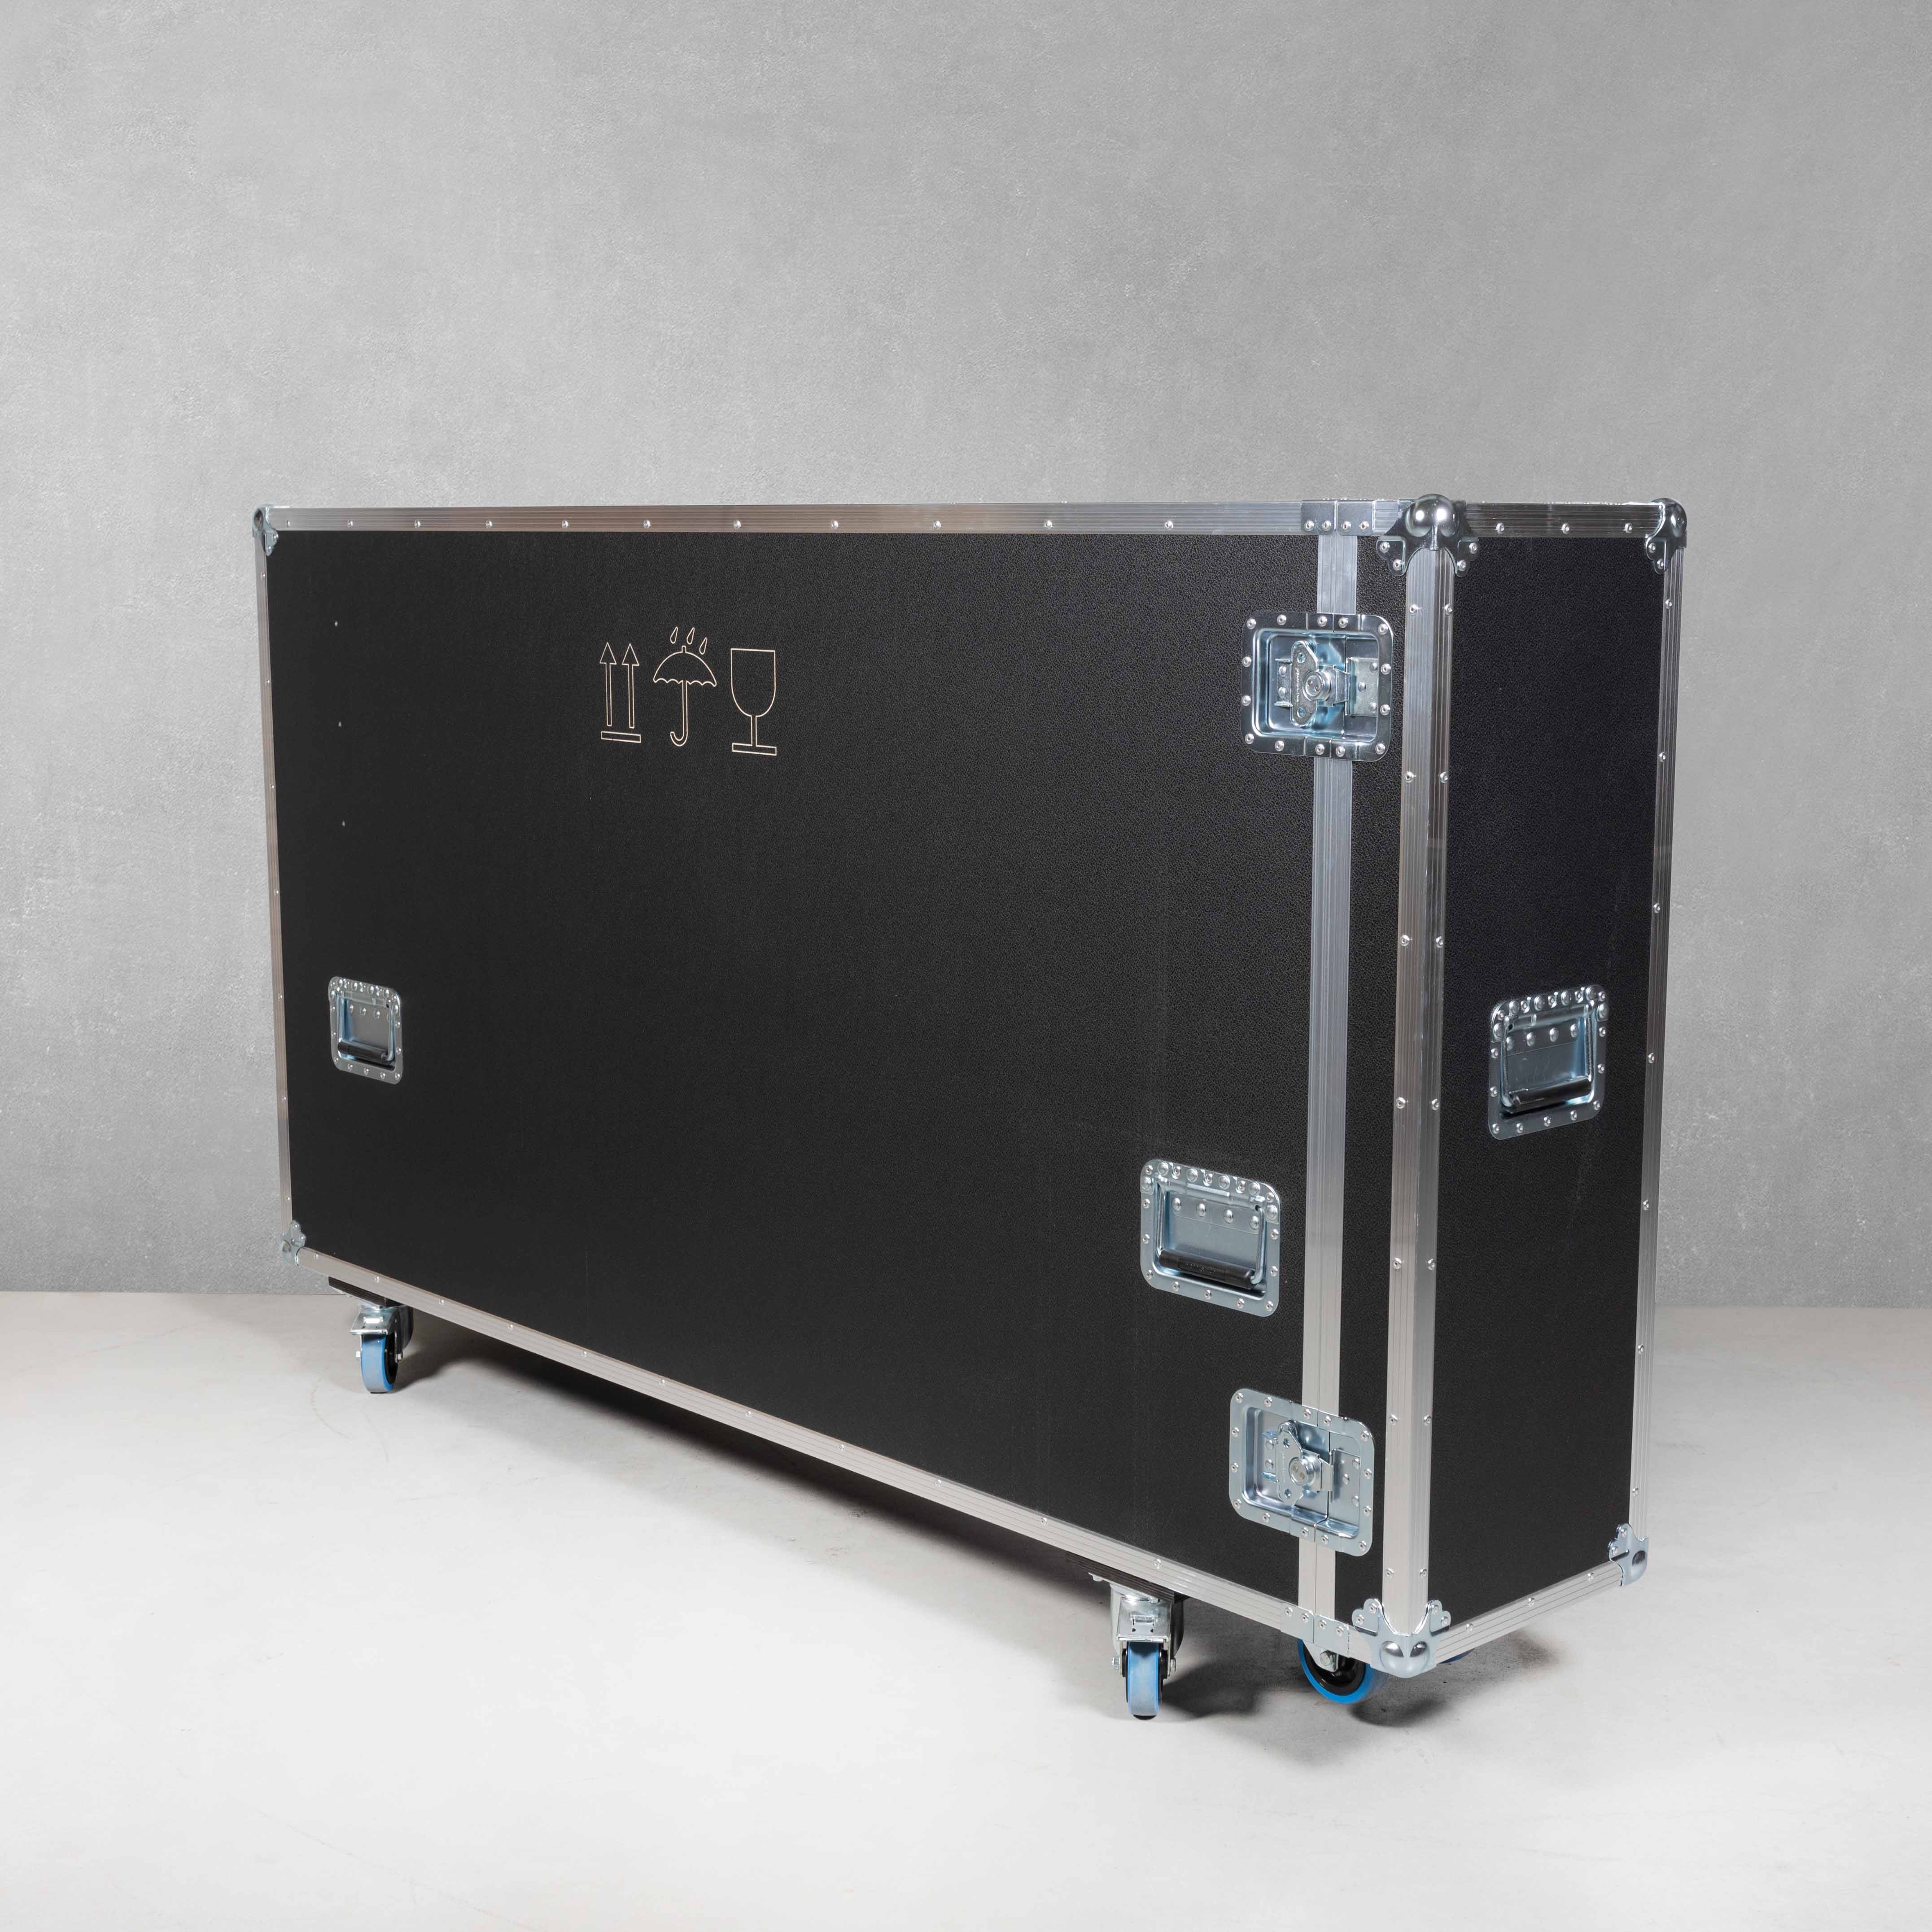 Universal-Push-Pull-Flightcase für zwei 40"-65" Flachbildschirme 